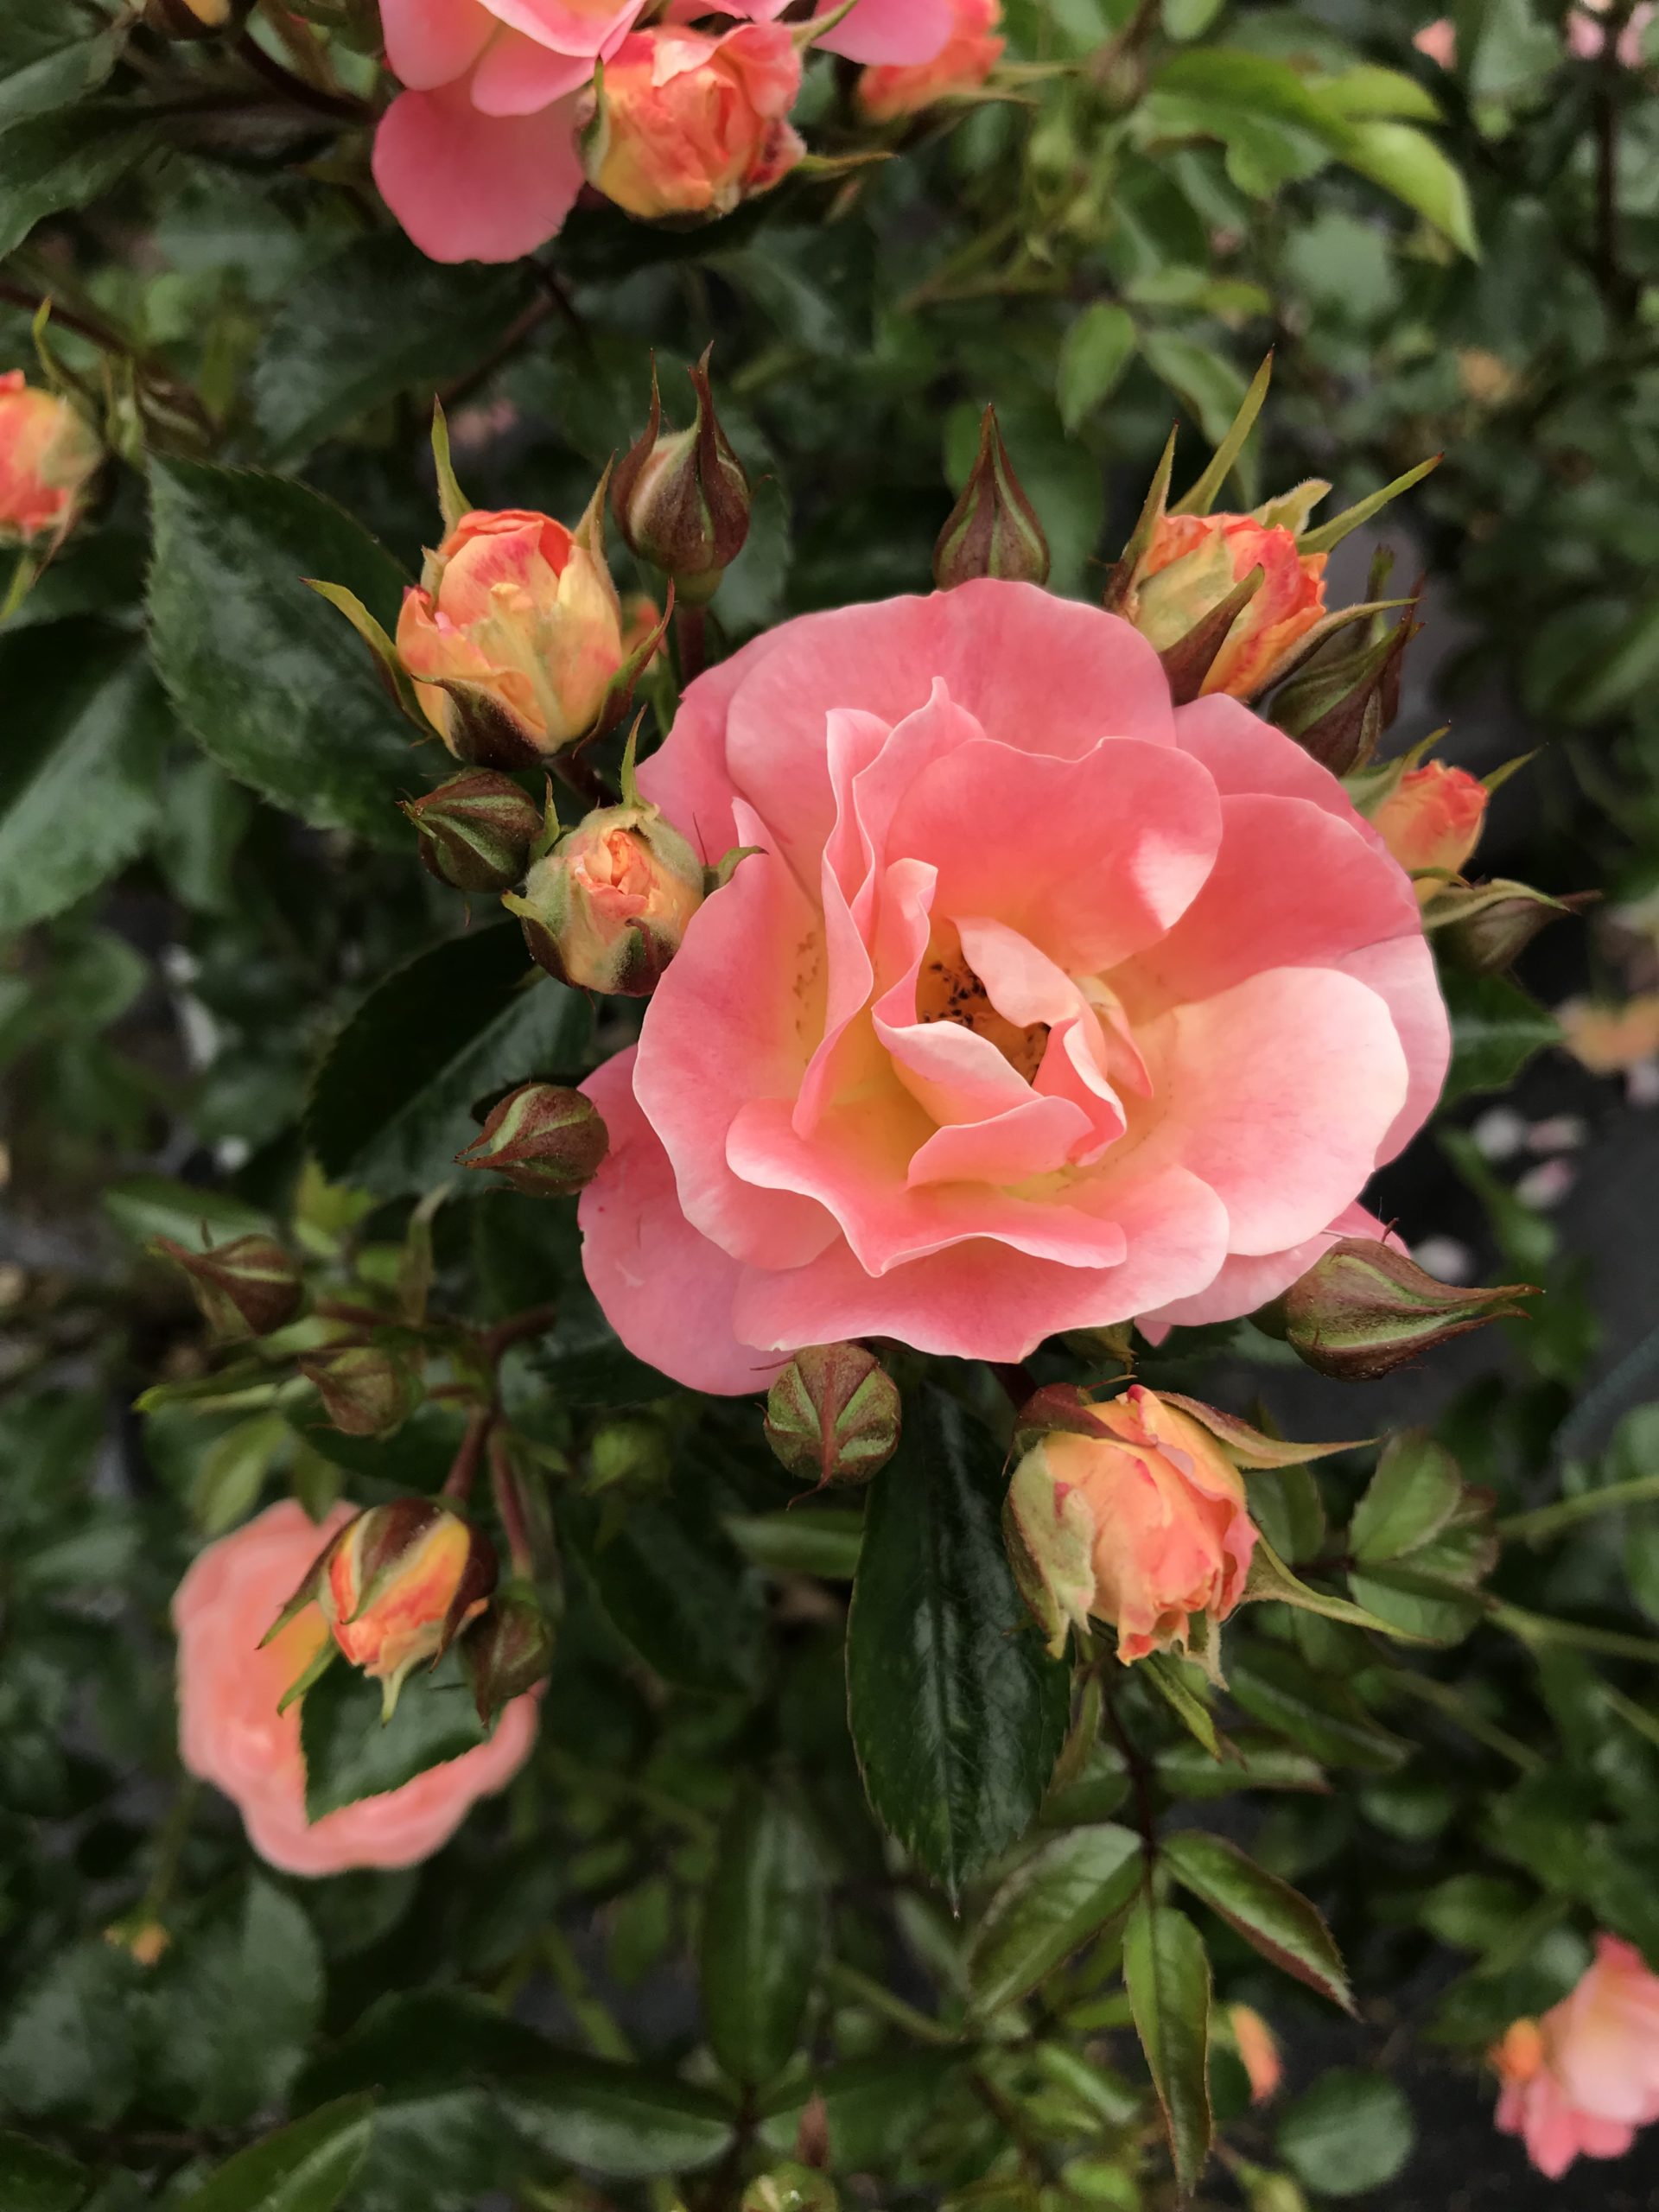 Peach Drift rose